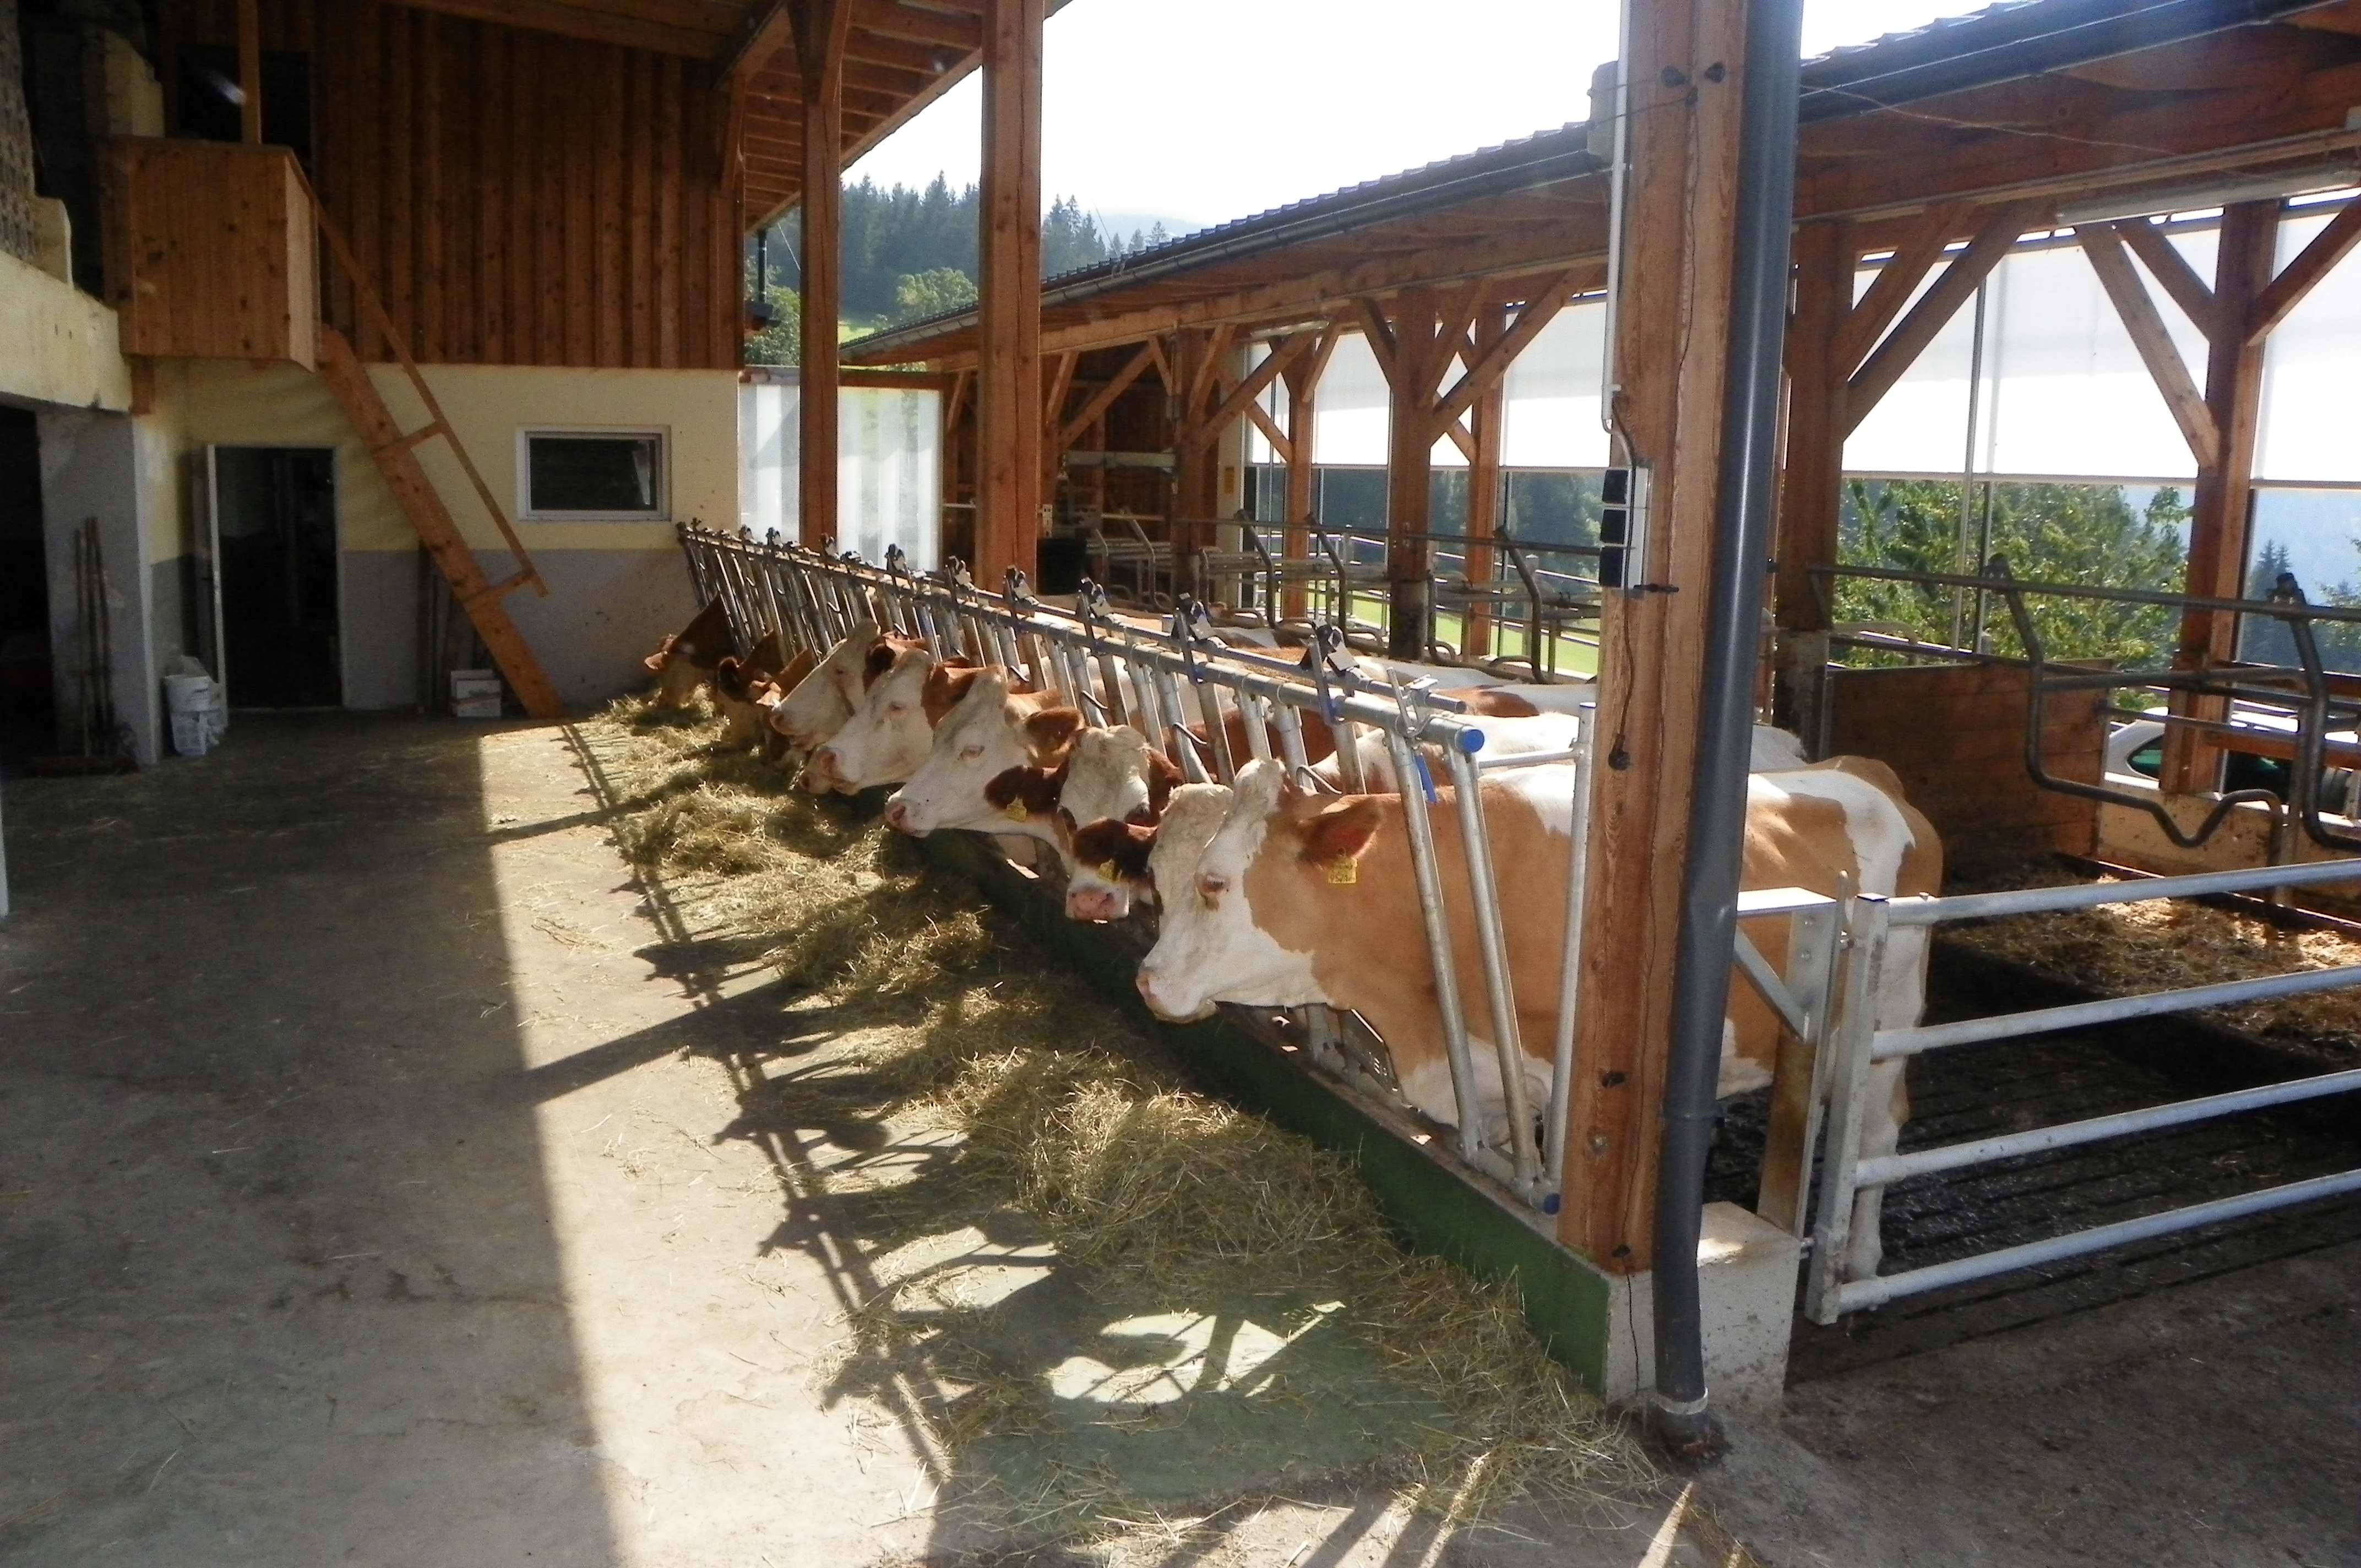 Entwicklung von Maßnahmen zur Optimierung des Tierwohl-Potenzials anhand des FarmLife Welfare -Index für Rinder